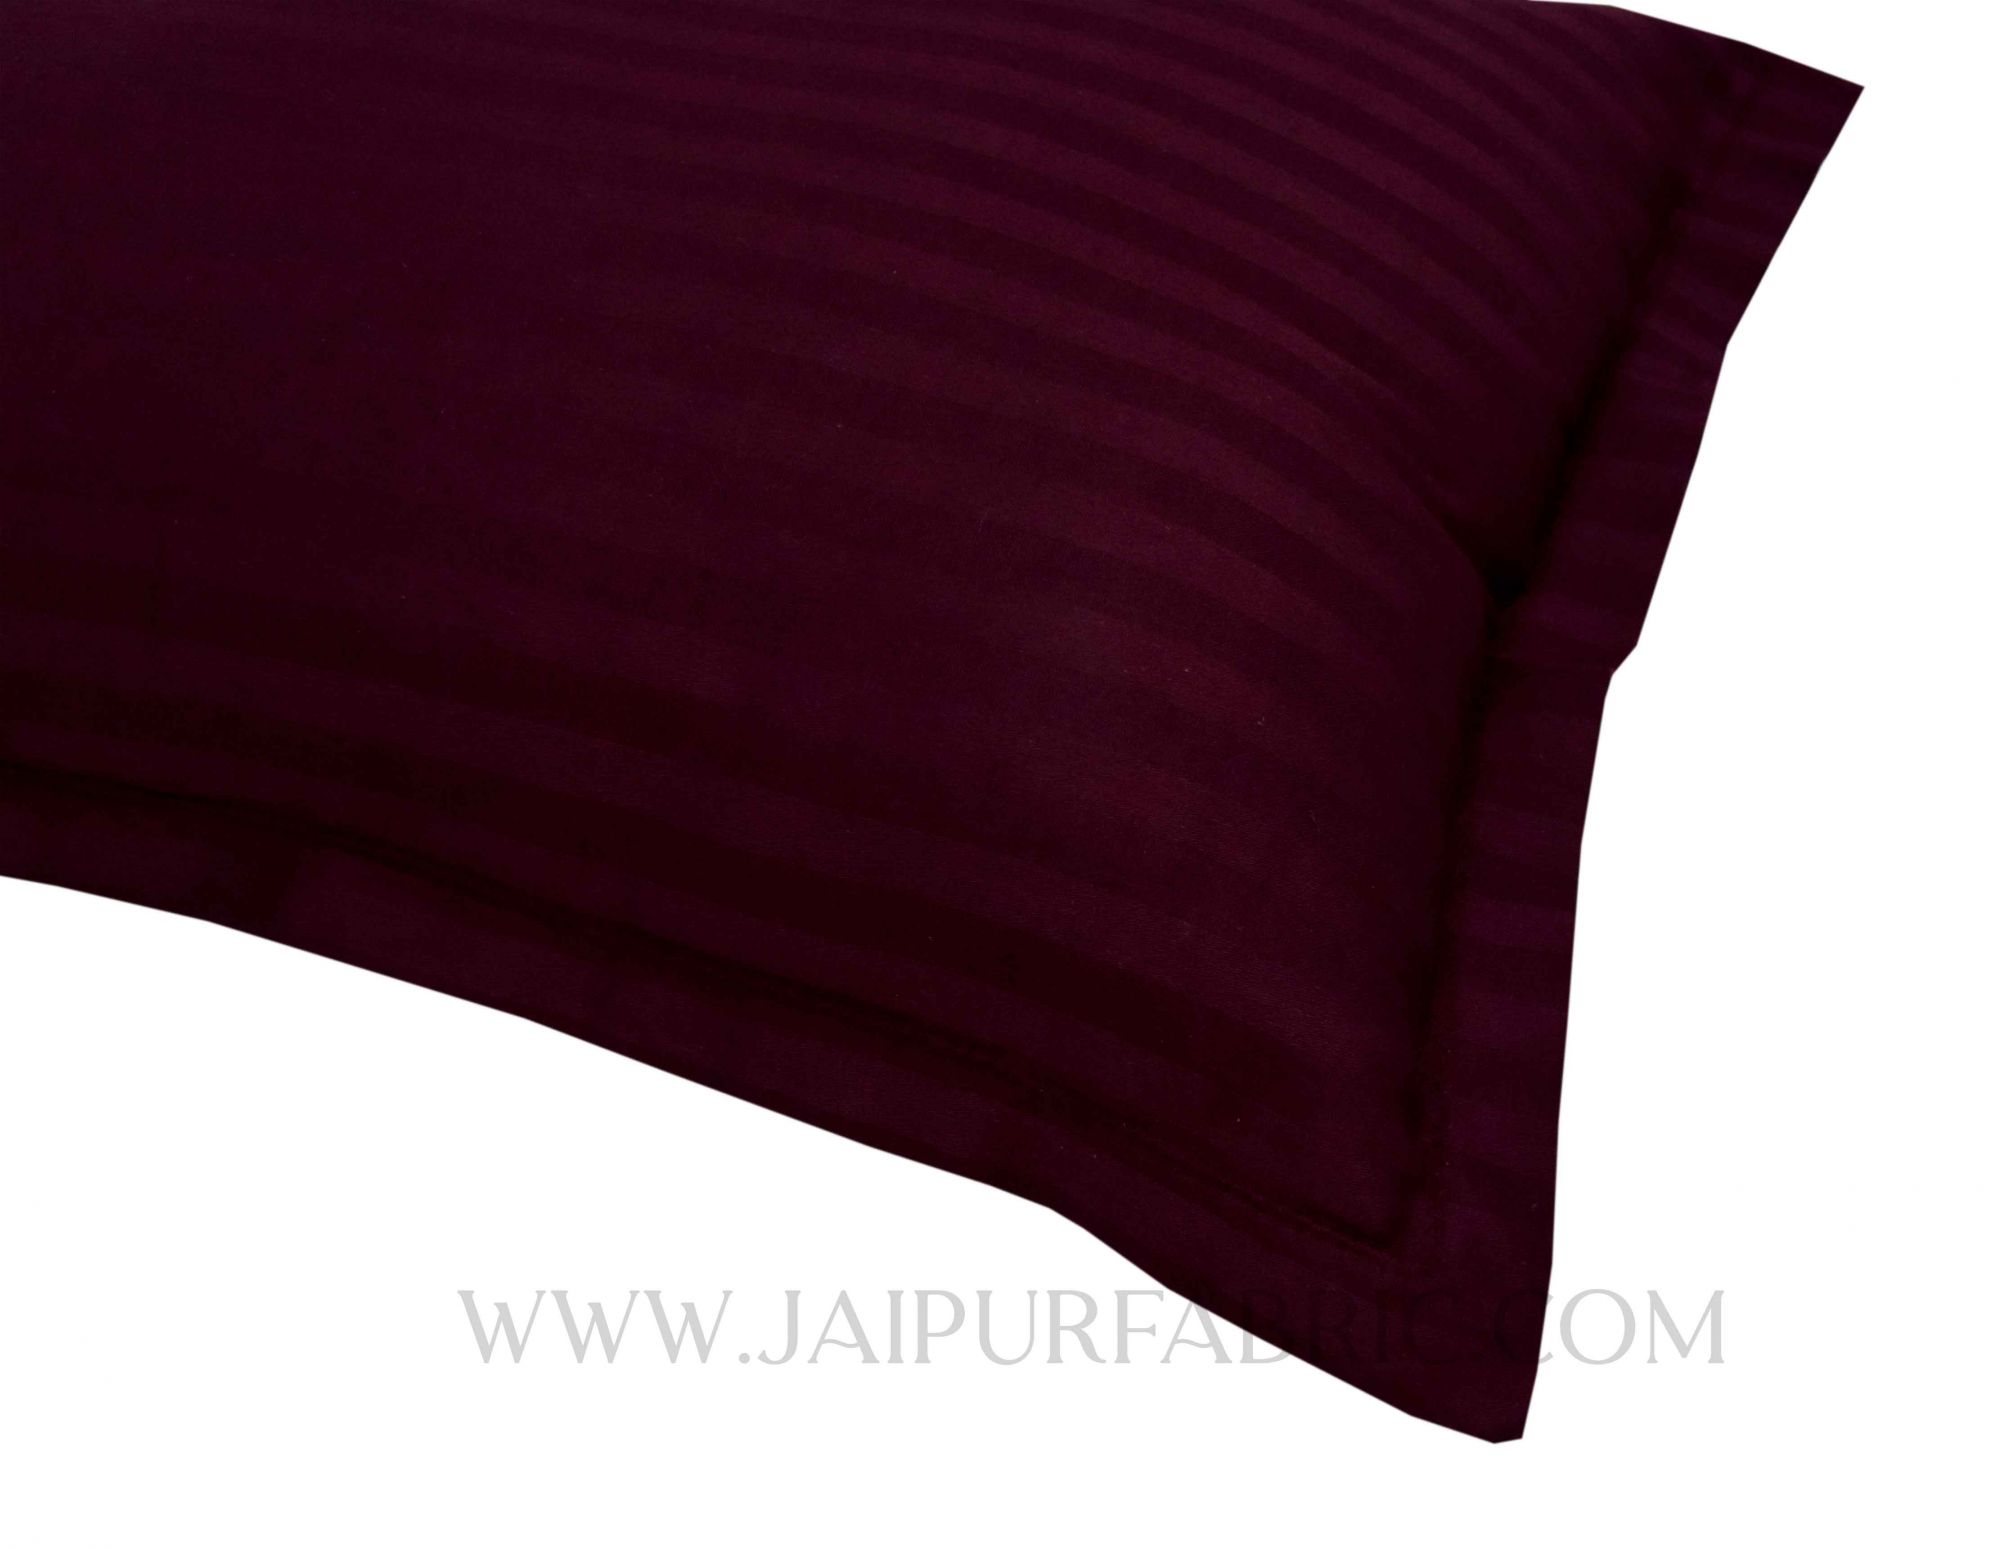 Purple Color Pillow Cover Pair